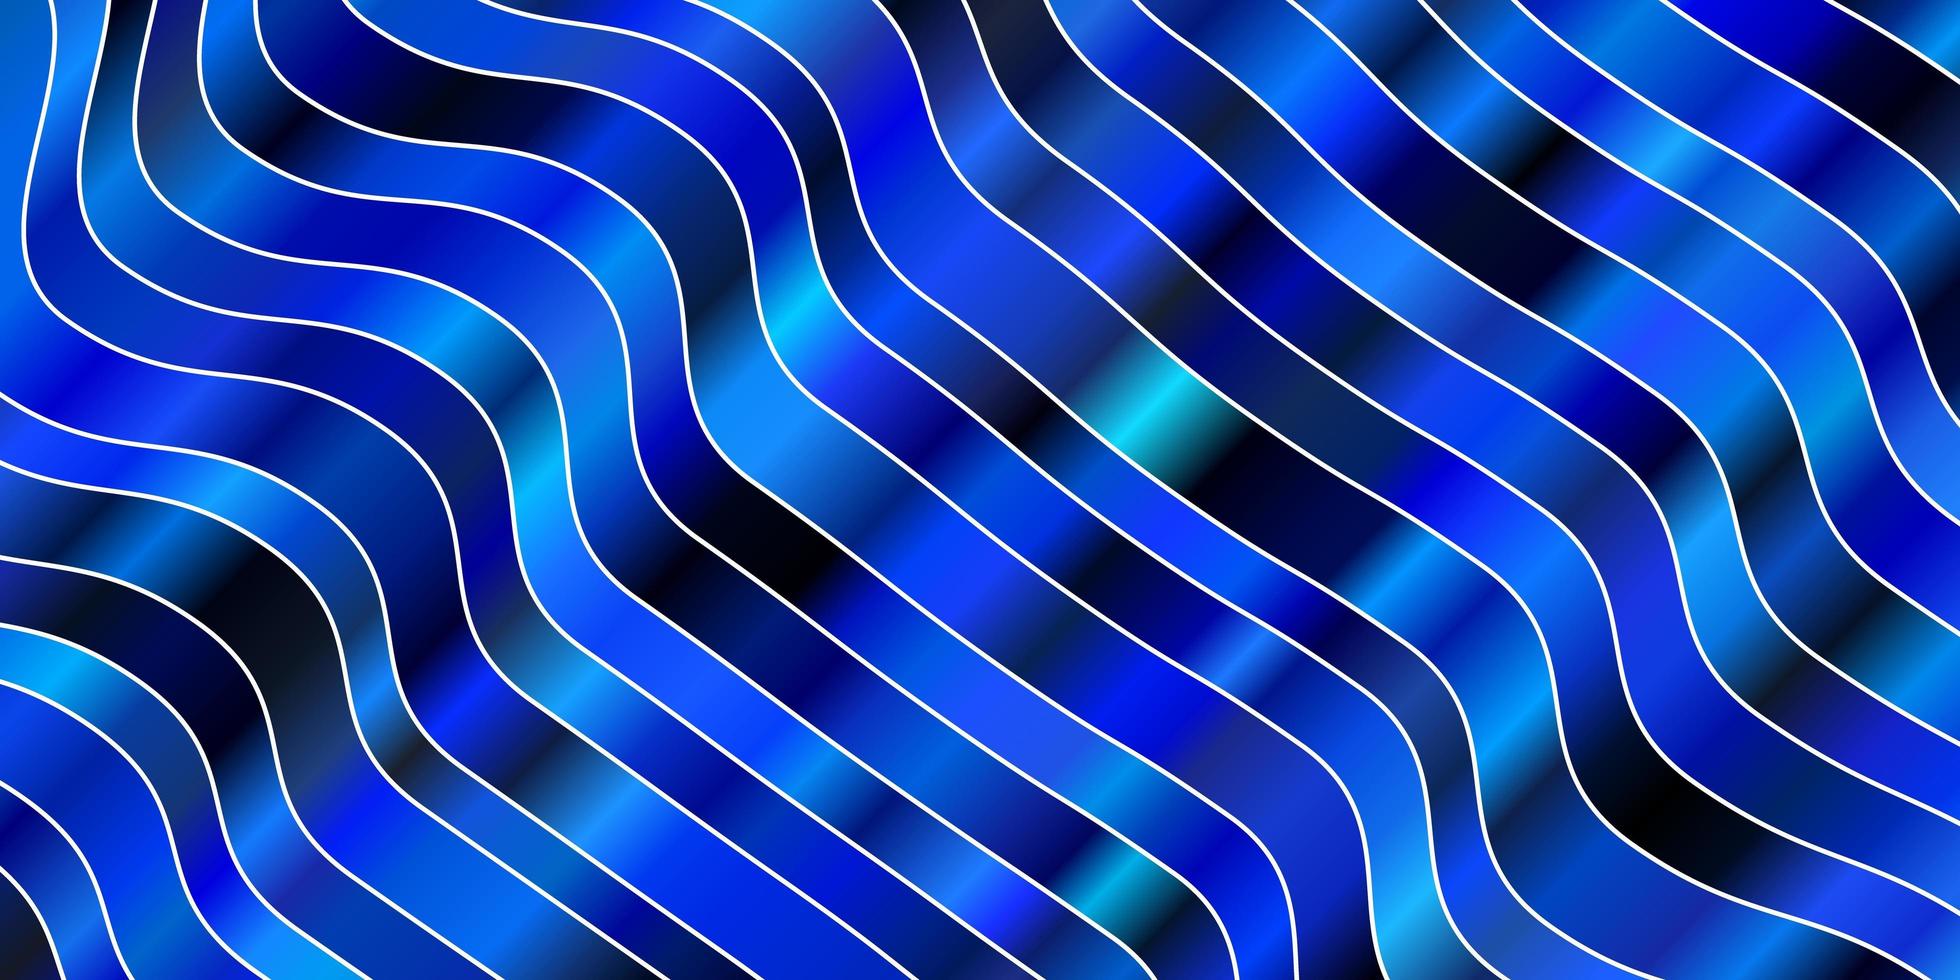 sfondo vettoriale azzurro con curve illustrazione astratta con motivo a linee sfumate a bande per annunci pubblicitari